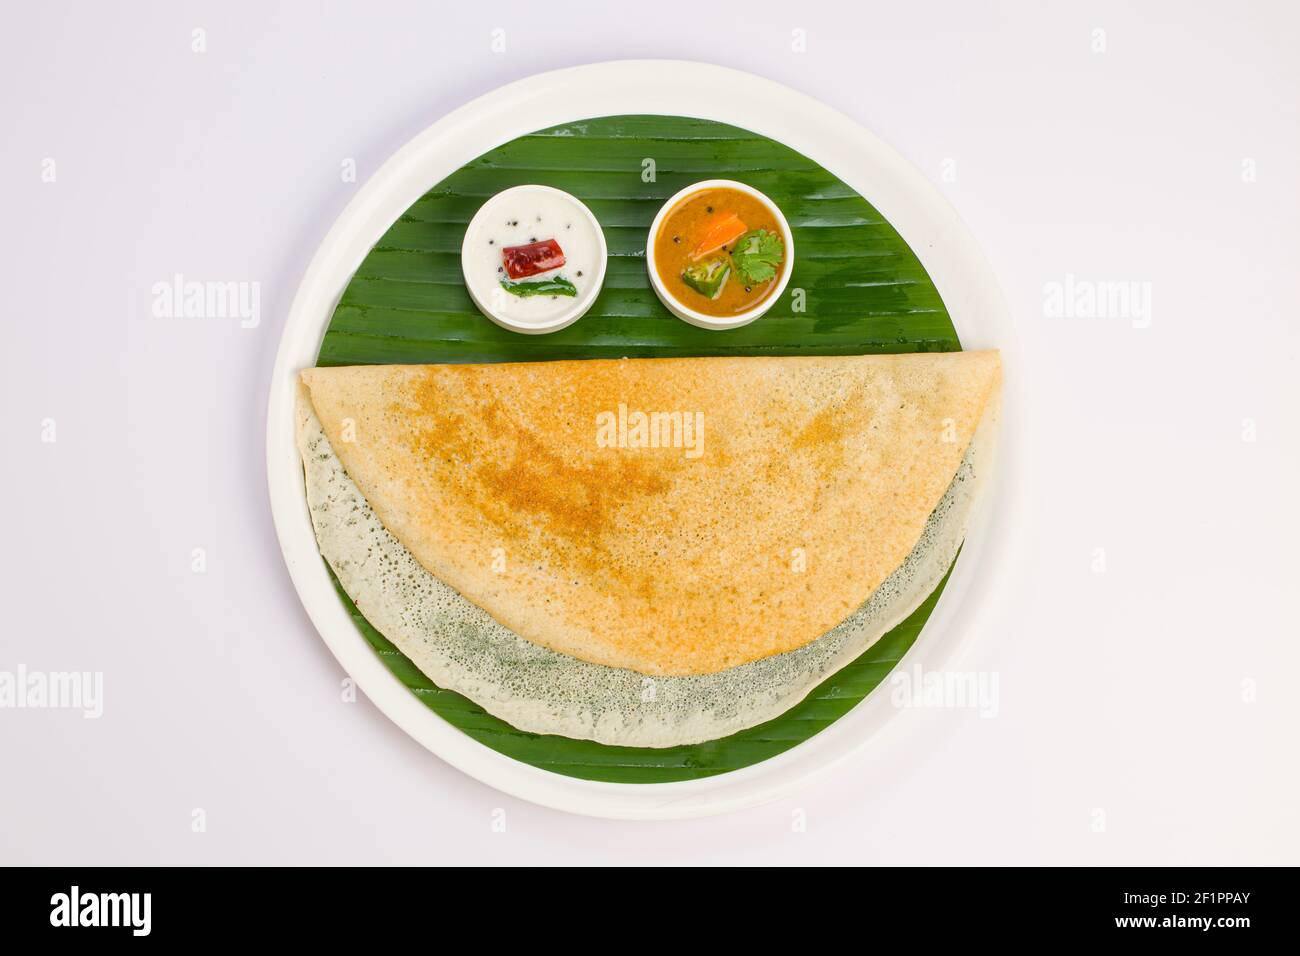 Ghee Roasted Dosa, südindisches Hauptfrühstück, das wunderschön wie ein lächelndes Gesicht auf einem weißen Teller mit Bananenblatt angeordnet ist. Stockfoto